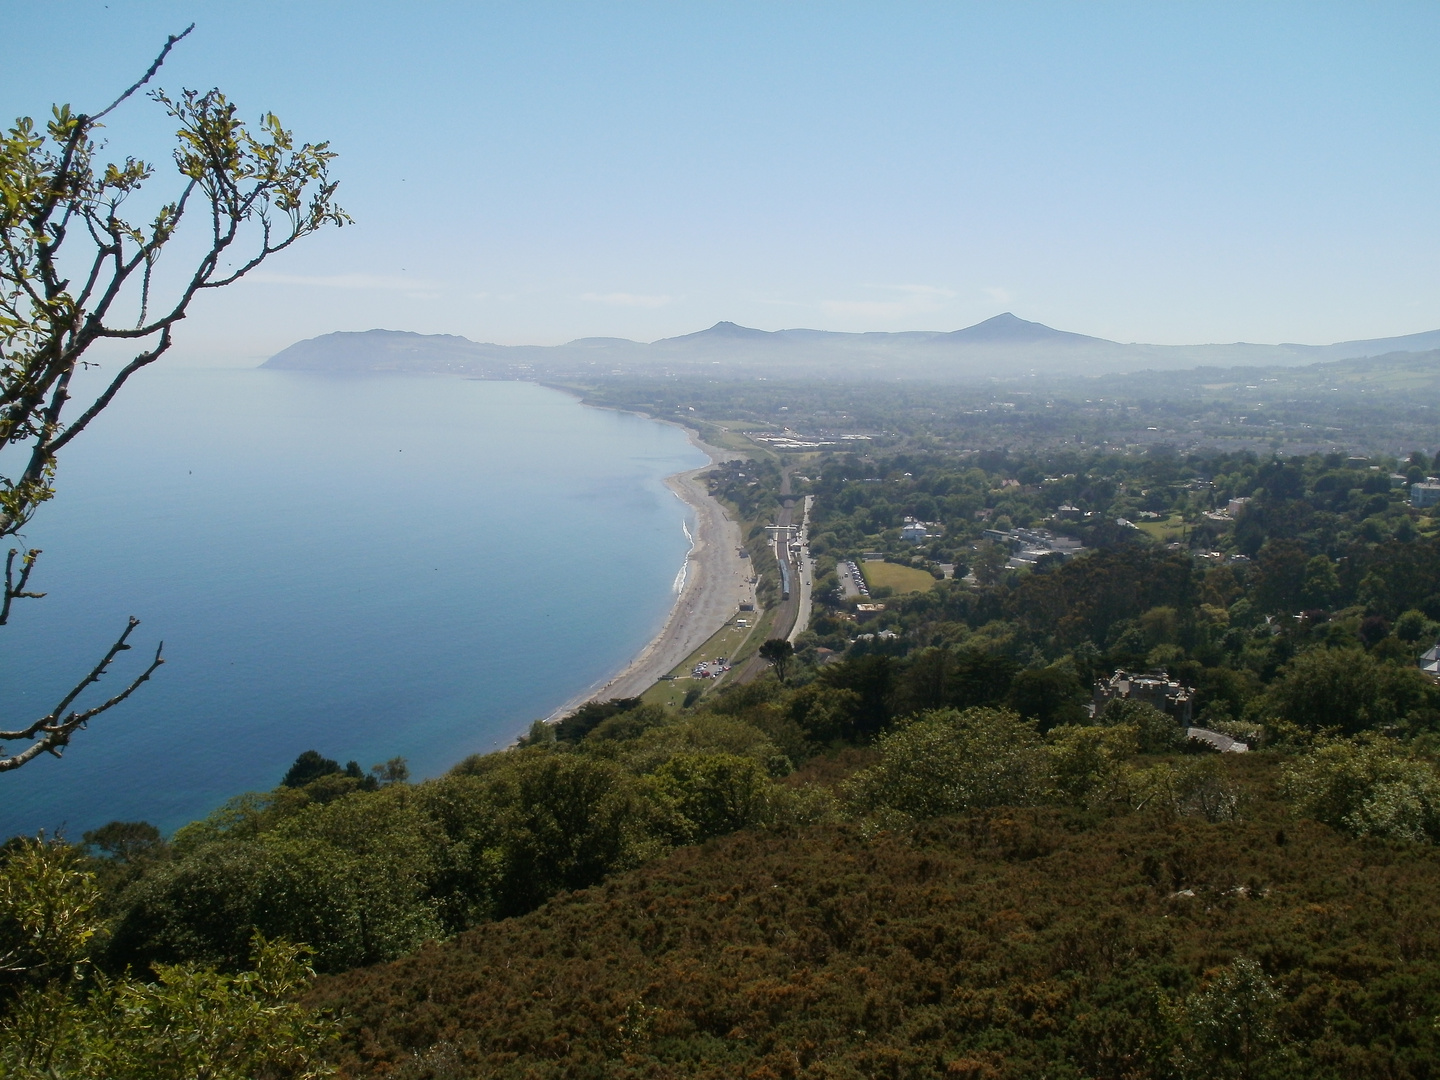 View of Killiney Bay from Killiney Hill